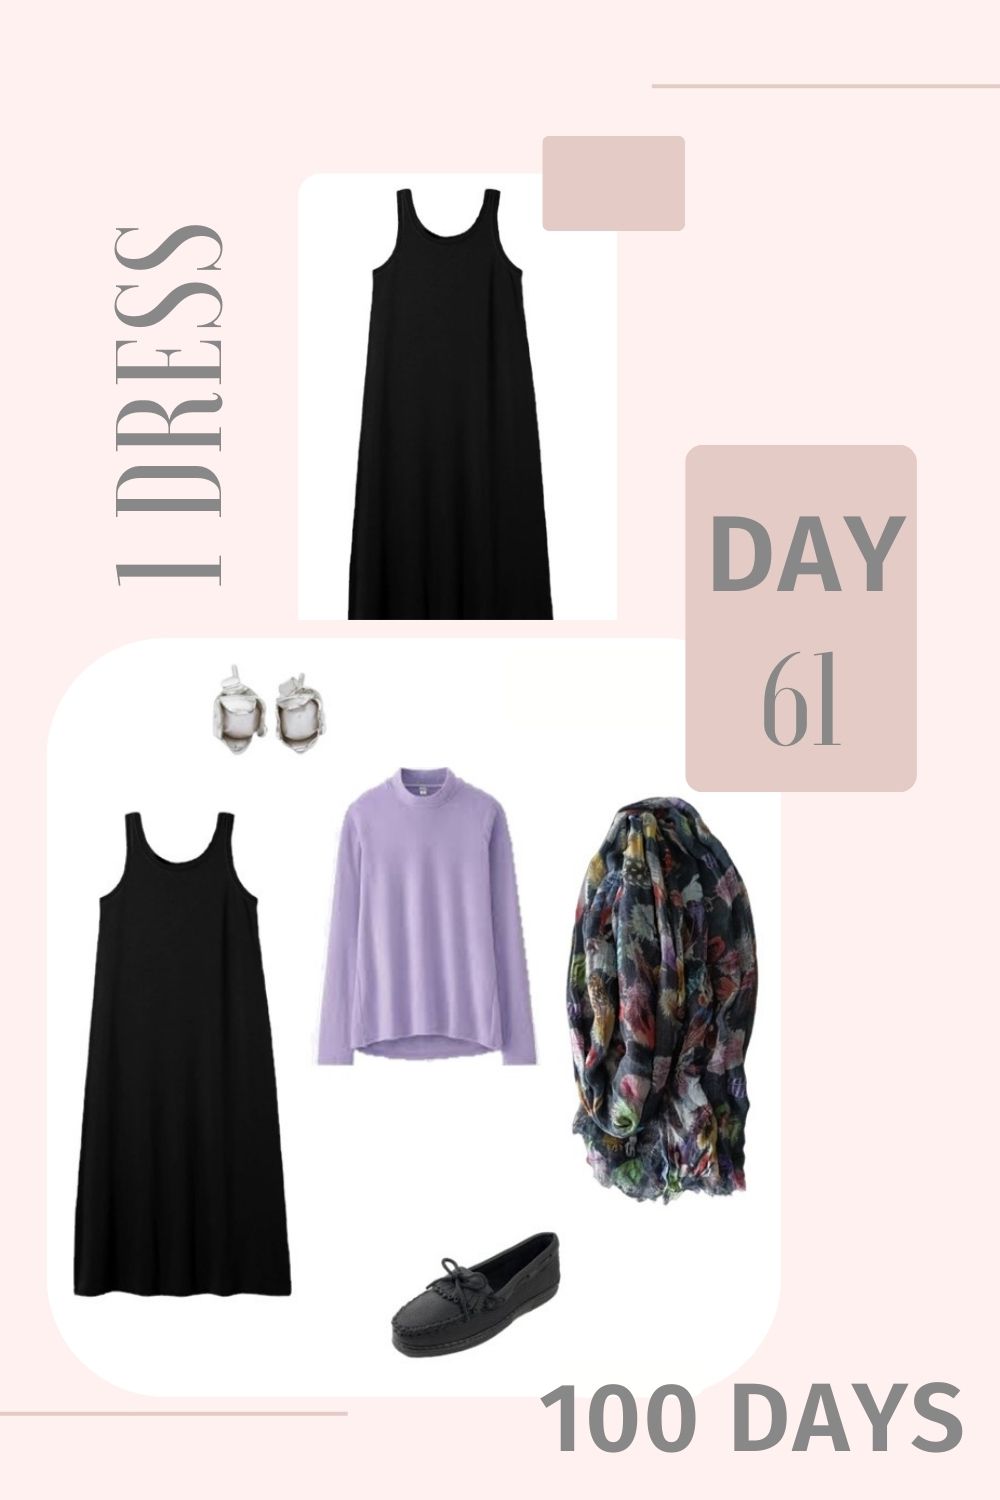 1 Dress 100 Days - Day 61